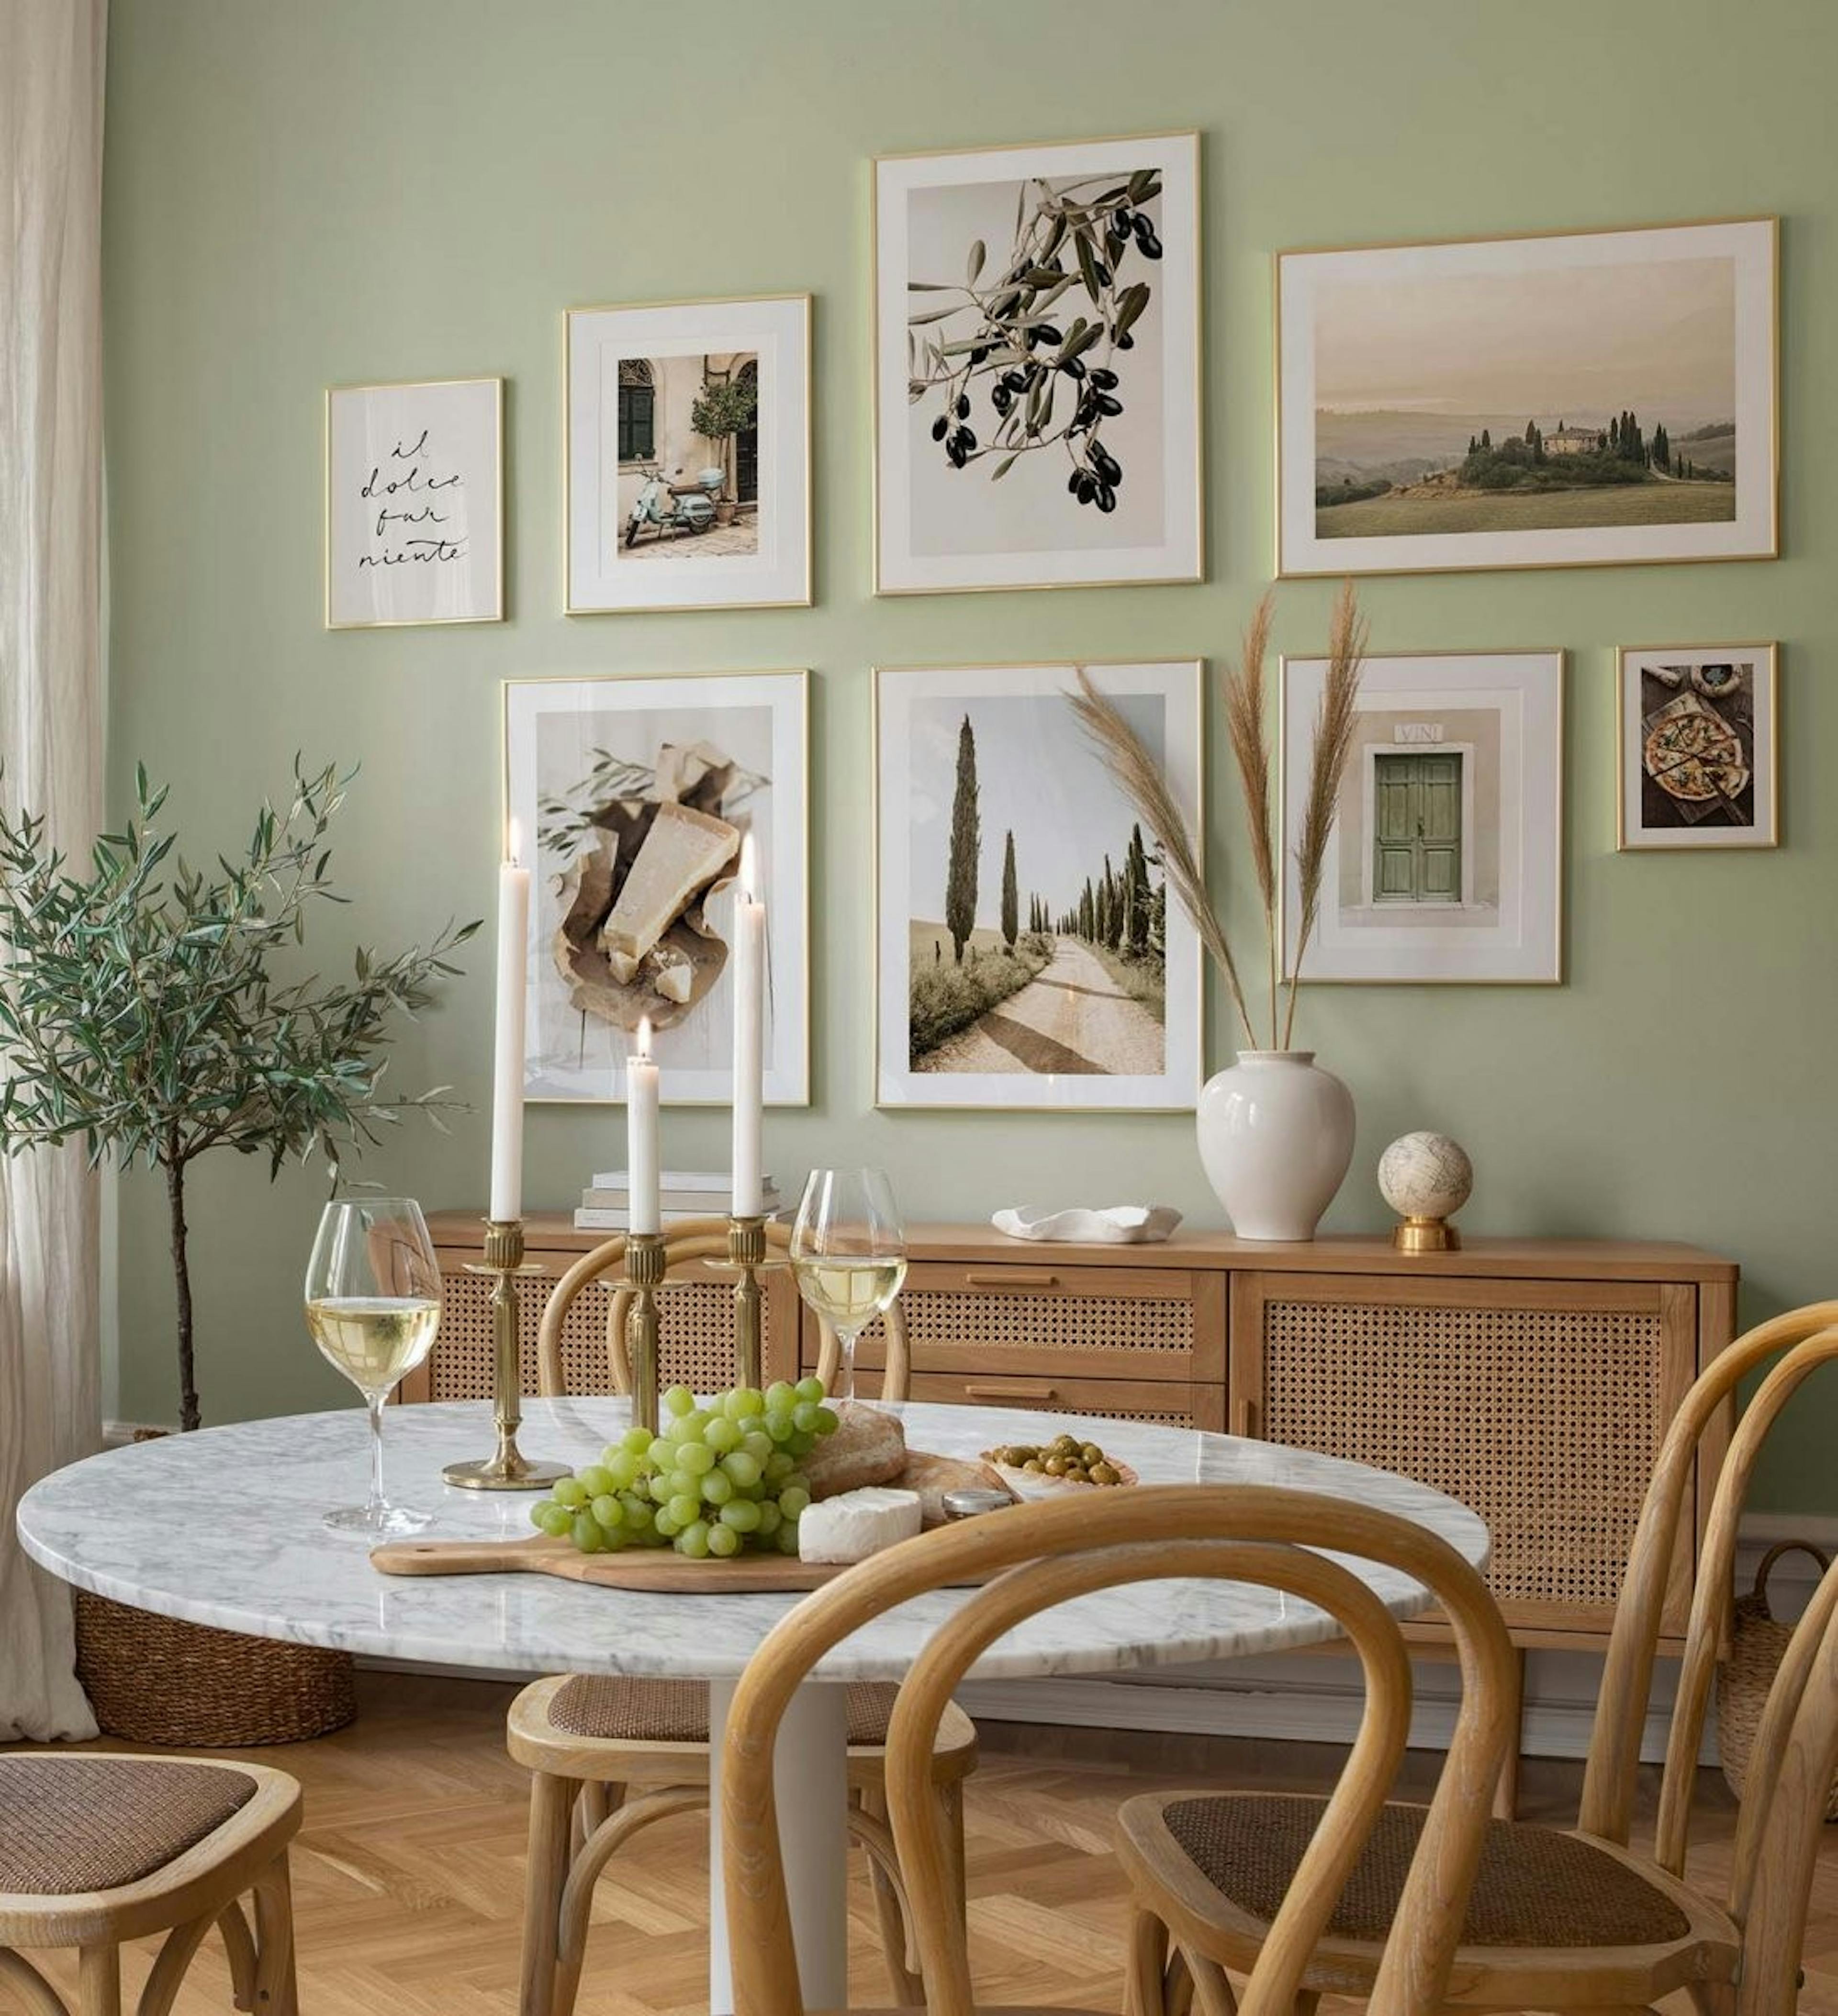 جدار معرض المناظر الطبيعية الخضراء مع إطارات ذهبية لغرفة الطعام